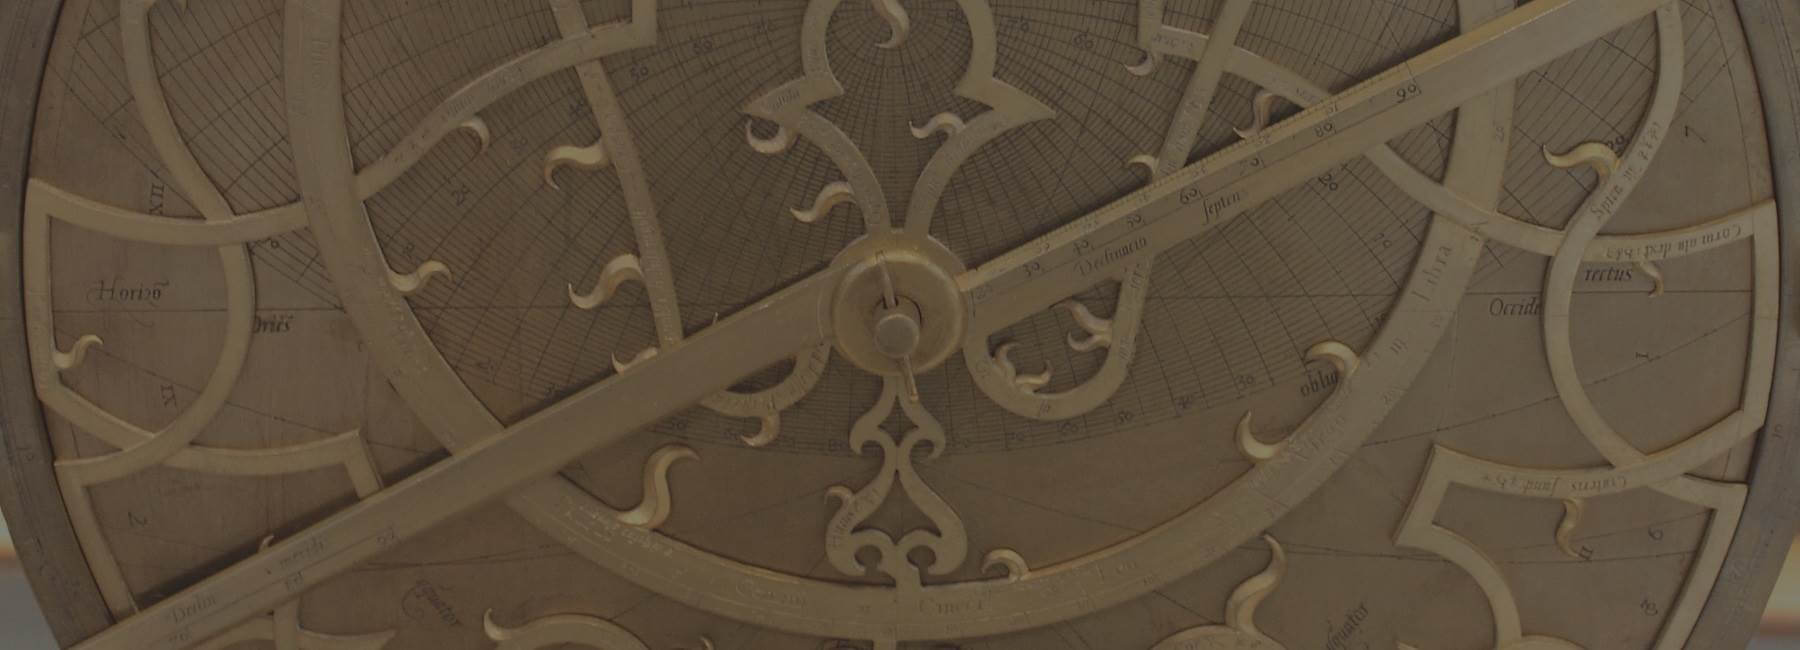 Découverte des astrolabes